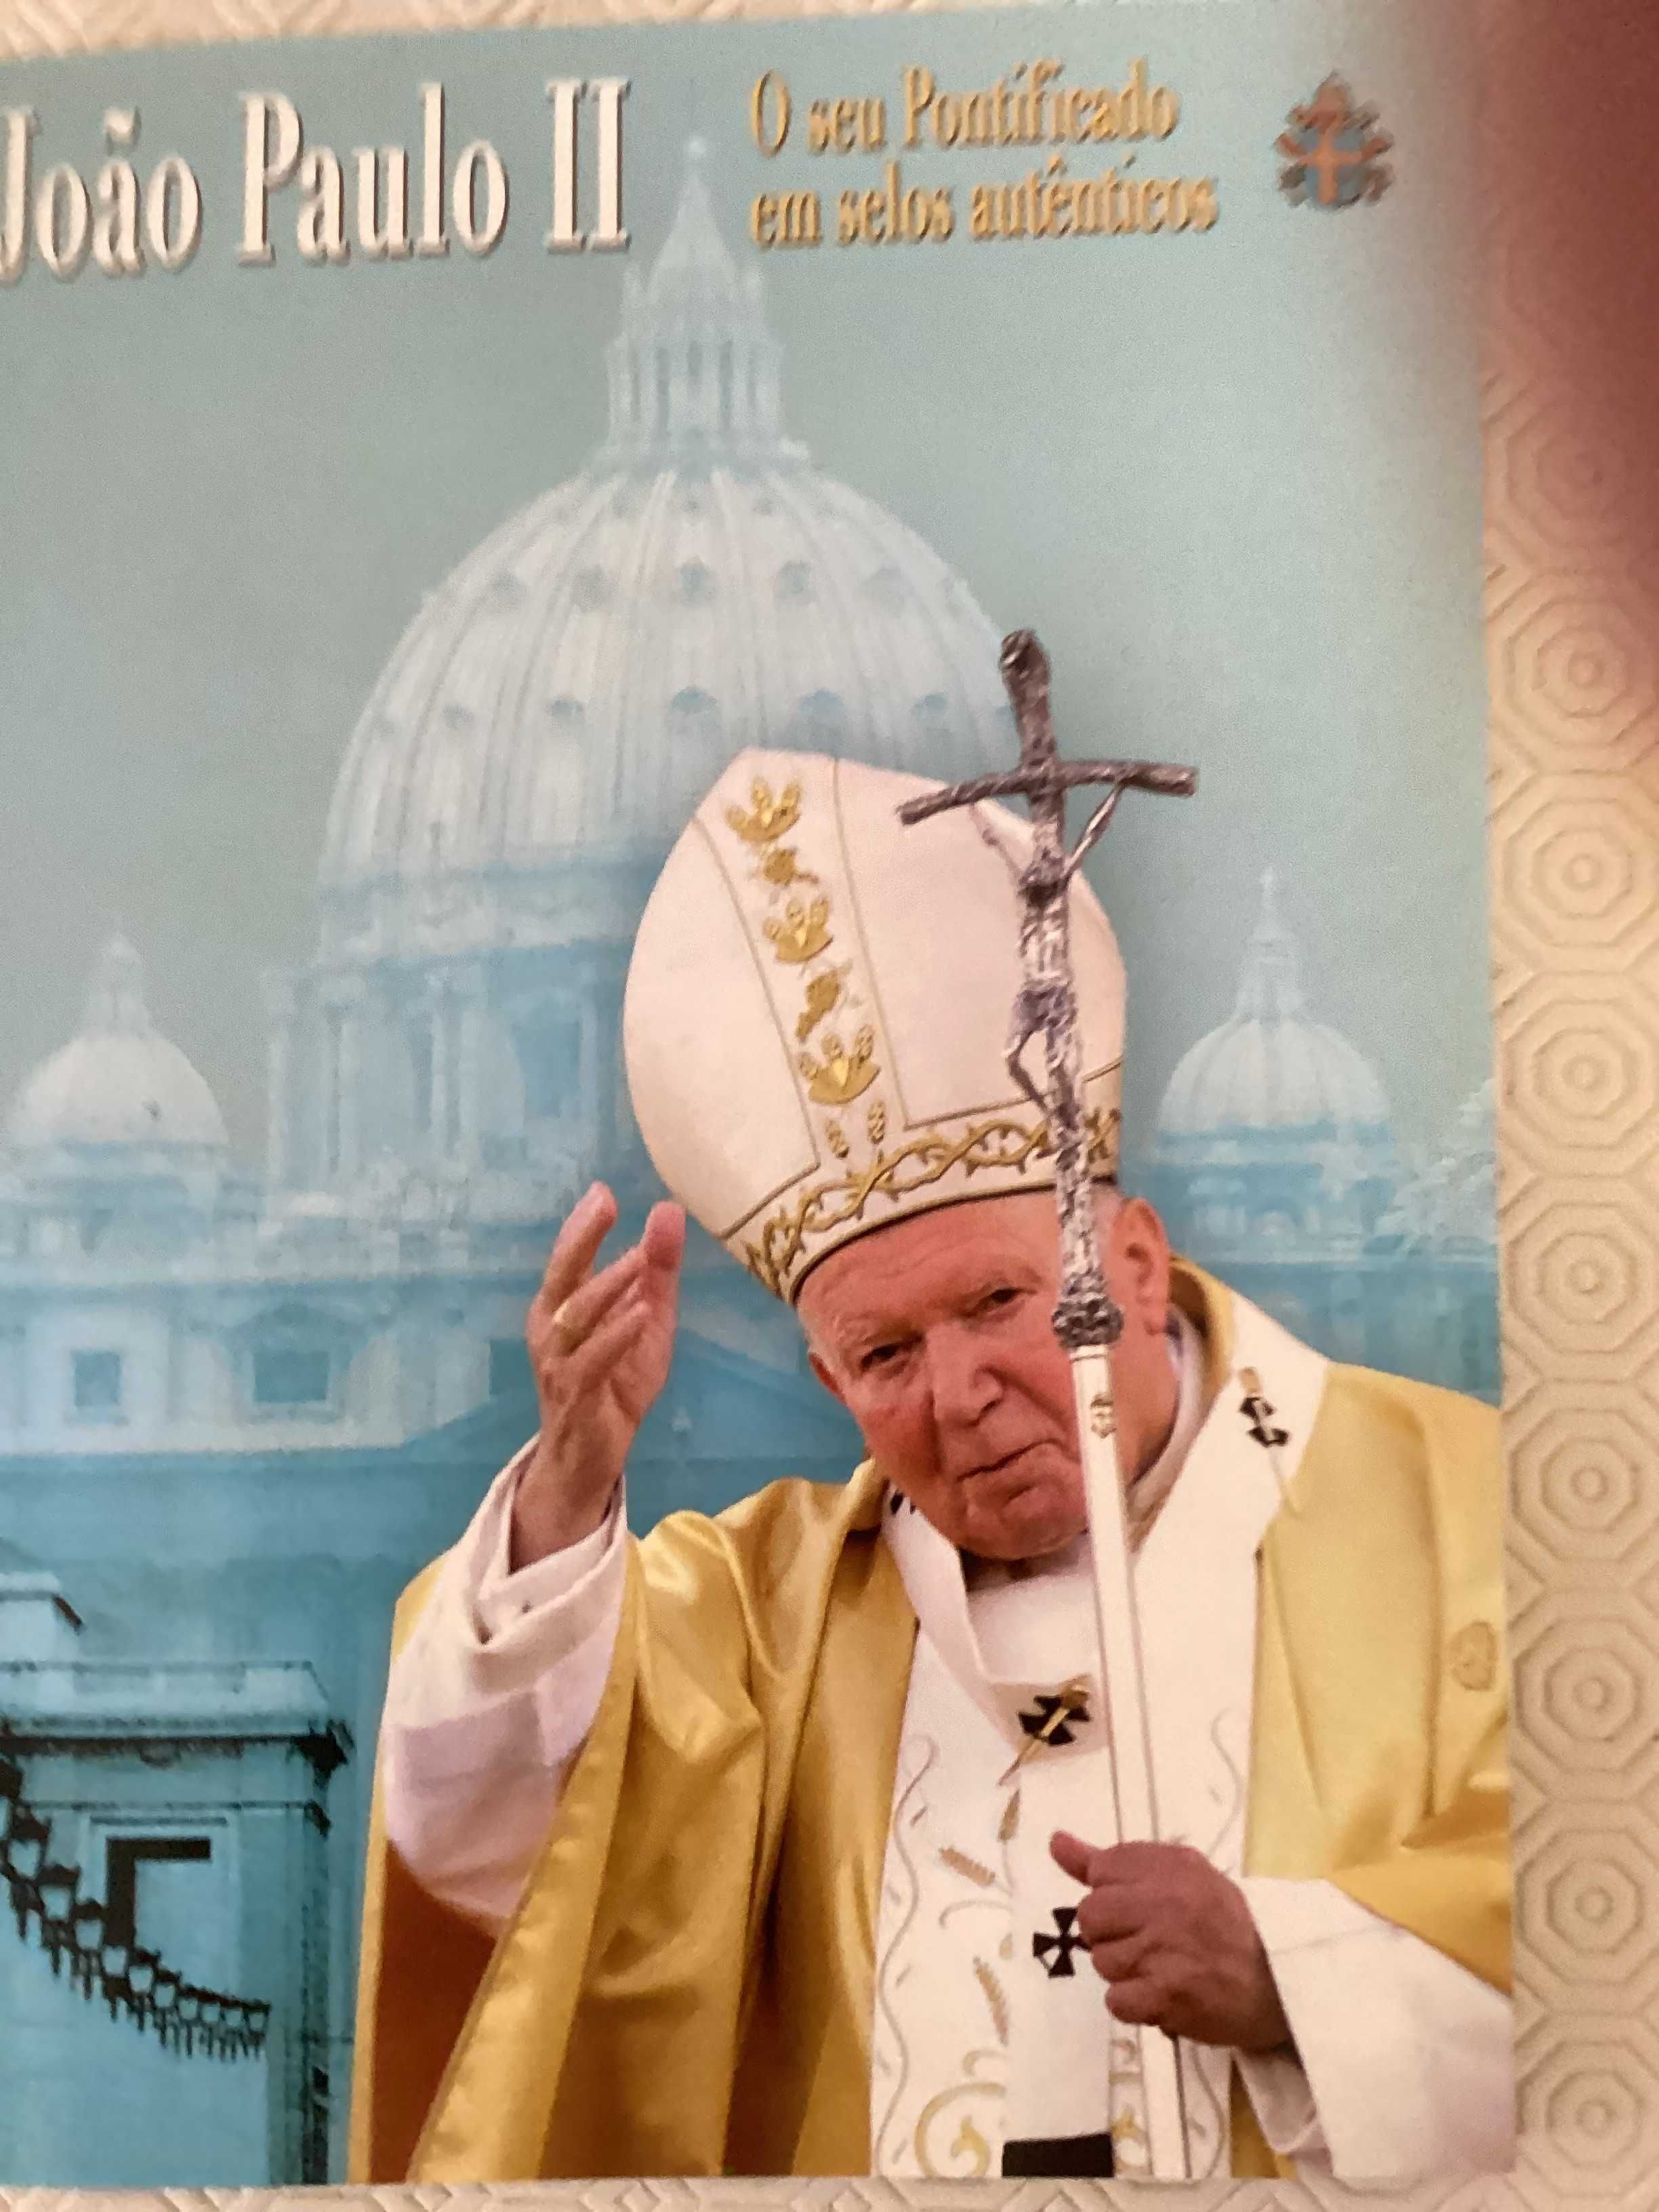 Joao Paulo II o seu pontificado em selos